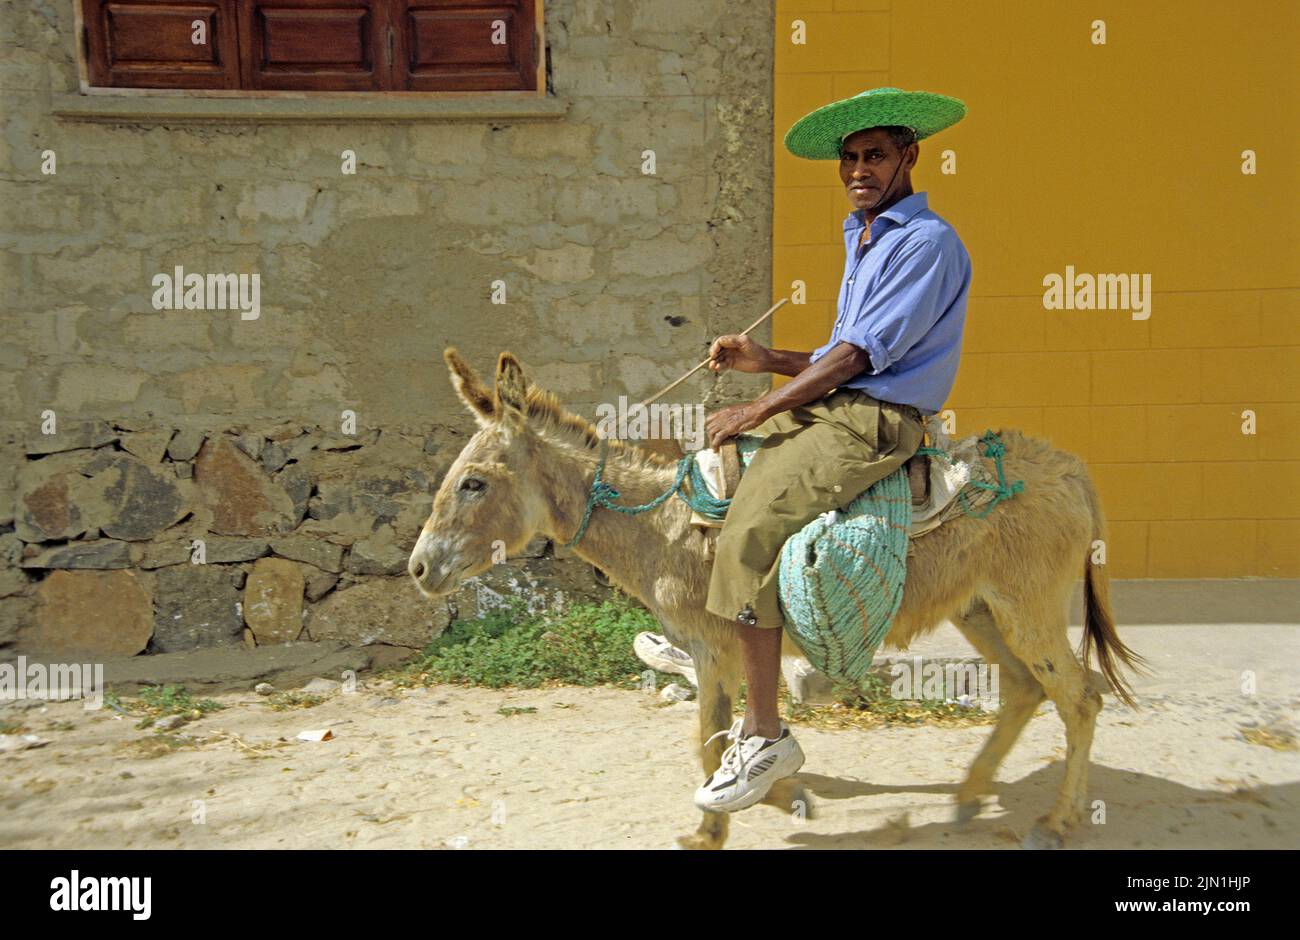 Einheimischer reitet auf einem Esel, Sal Rei, Boavista, Kapverden, Afrika | Elderly man on a donkey, Sal Rei, Boavista, Cape Verde Islands, Africa Stock Photo